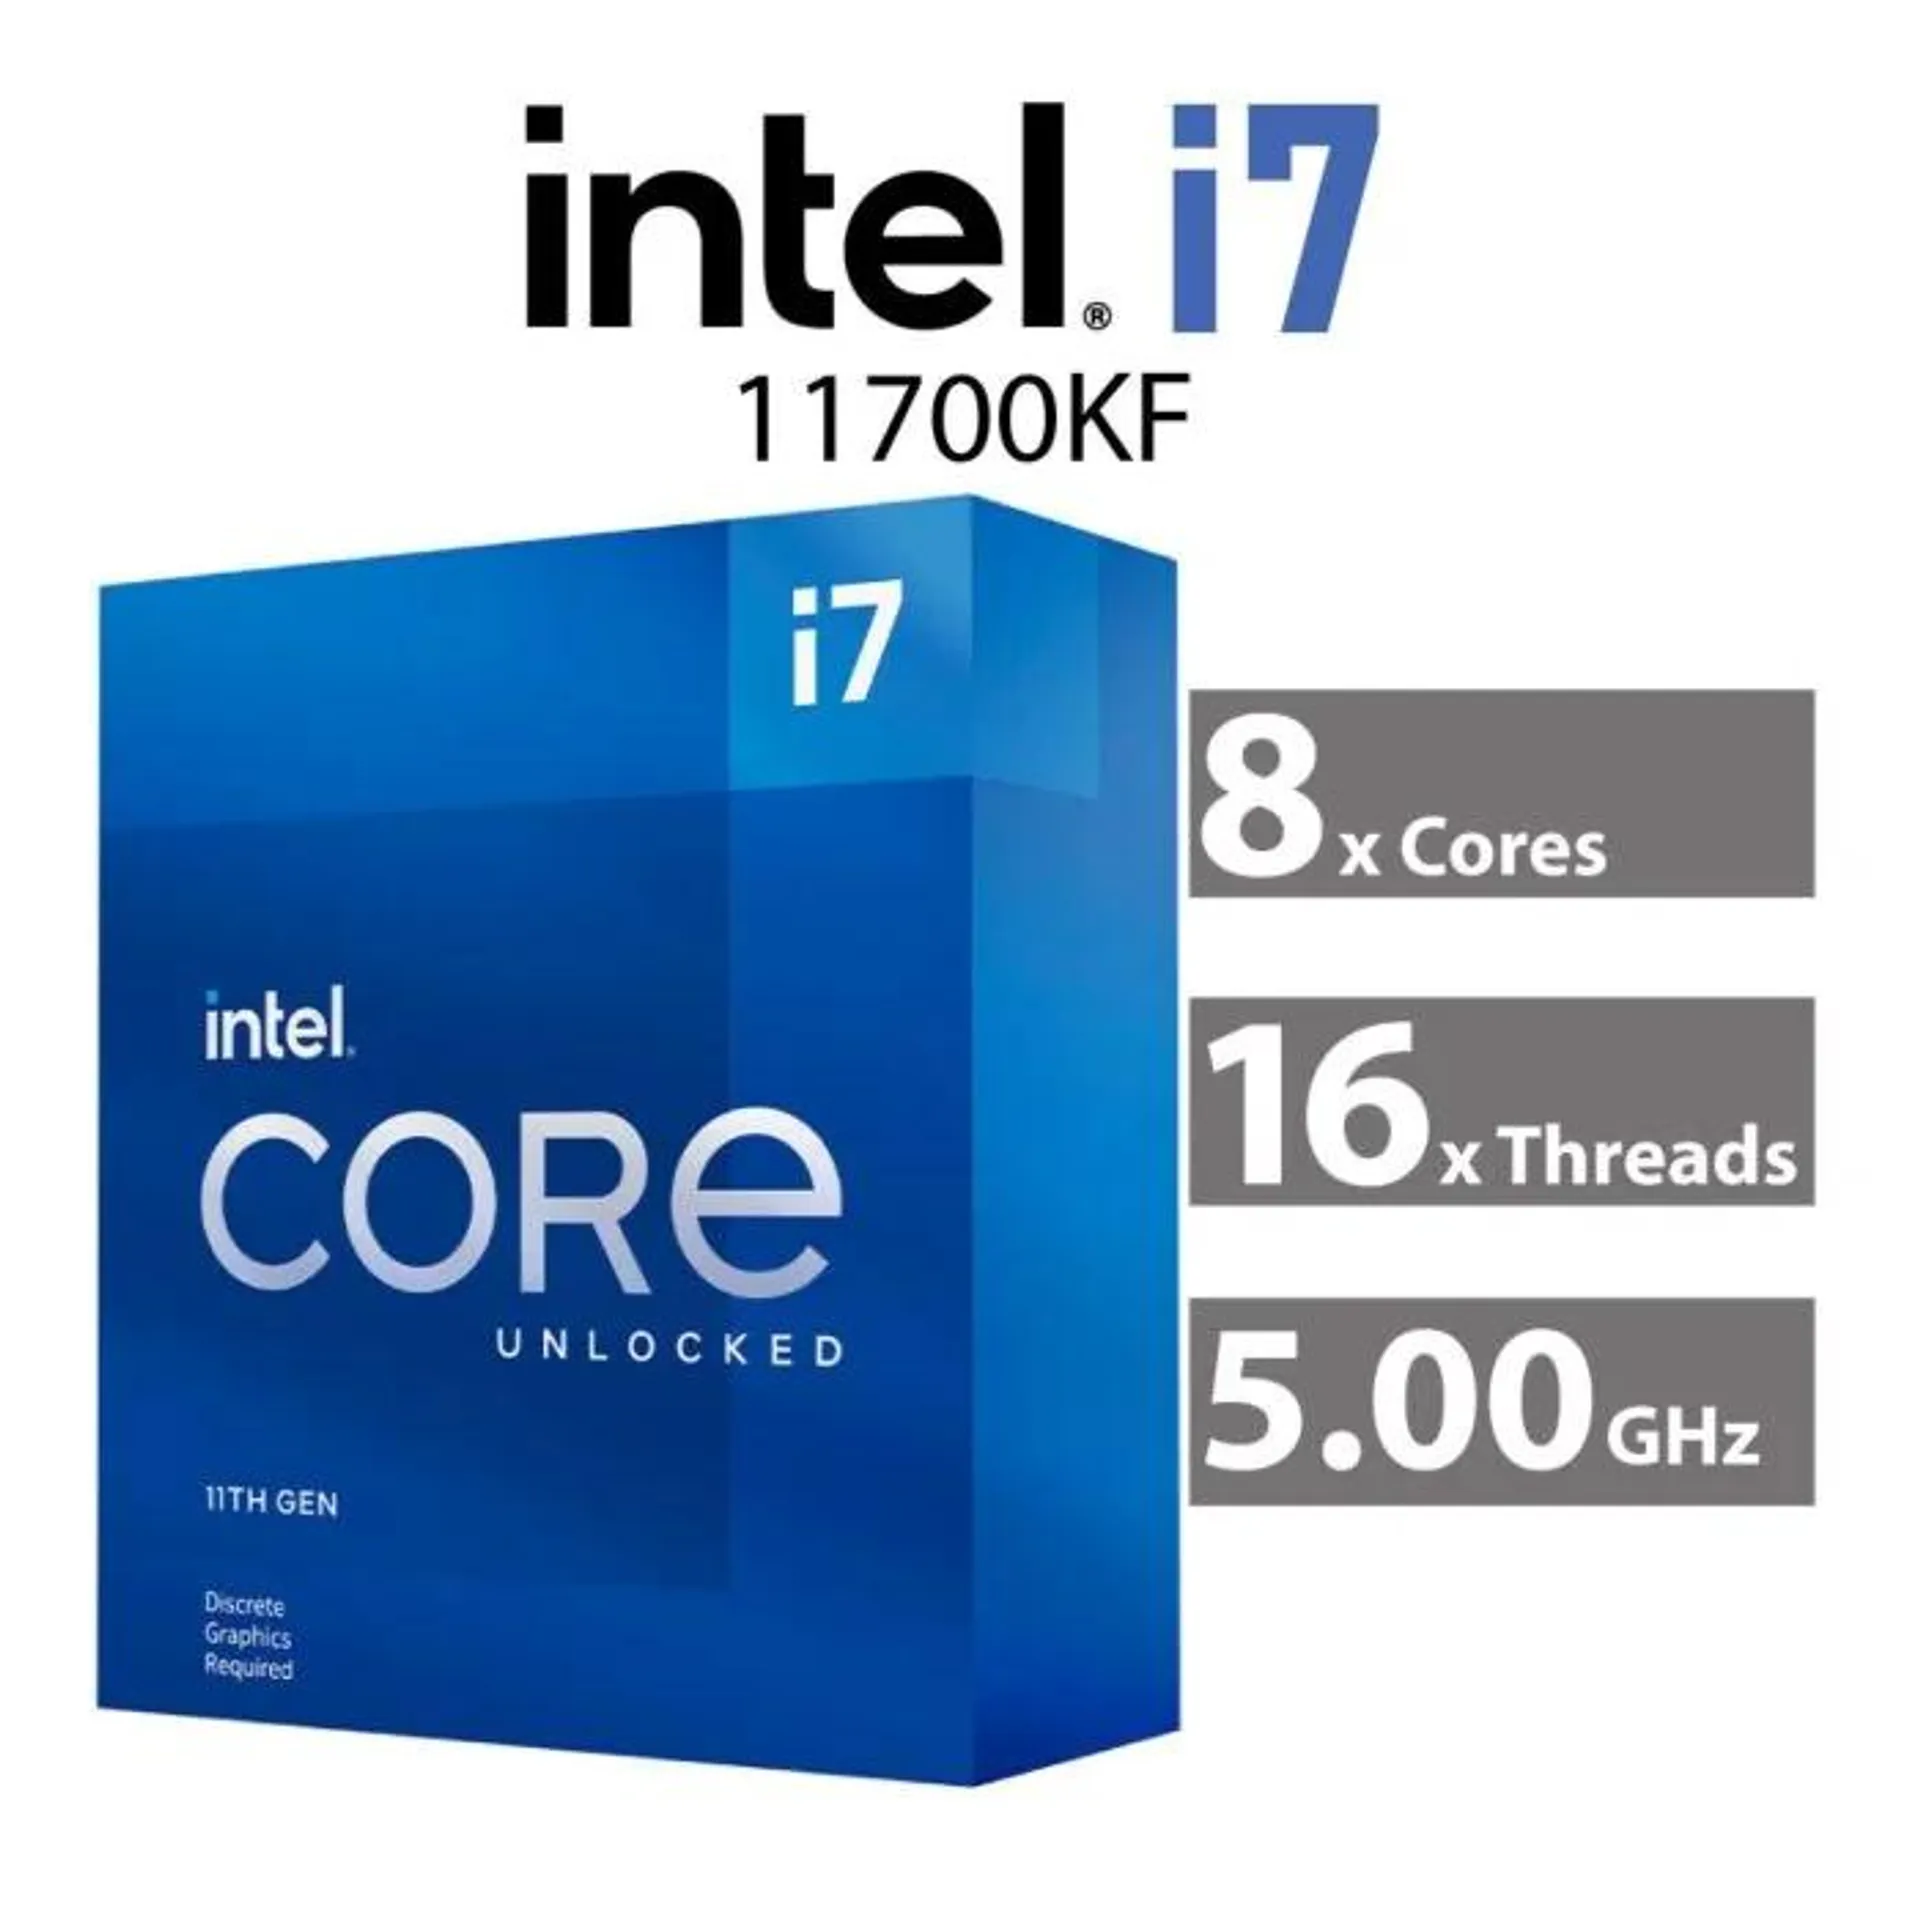 Intel Core i7-11700KF Rocket Lake 8-Core 3.60GHz LGA1200 125W BX8070811700KF Desktop Processor